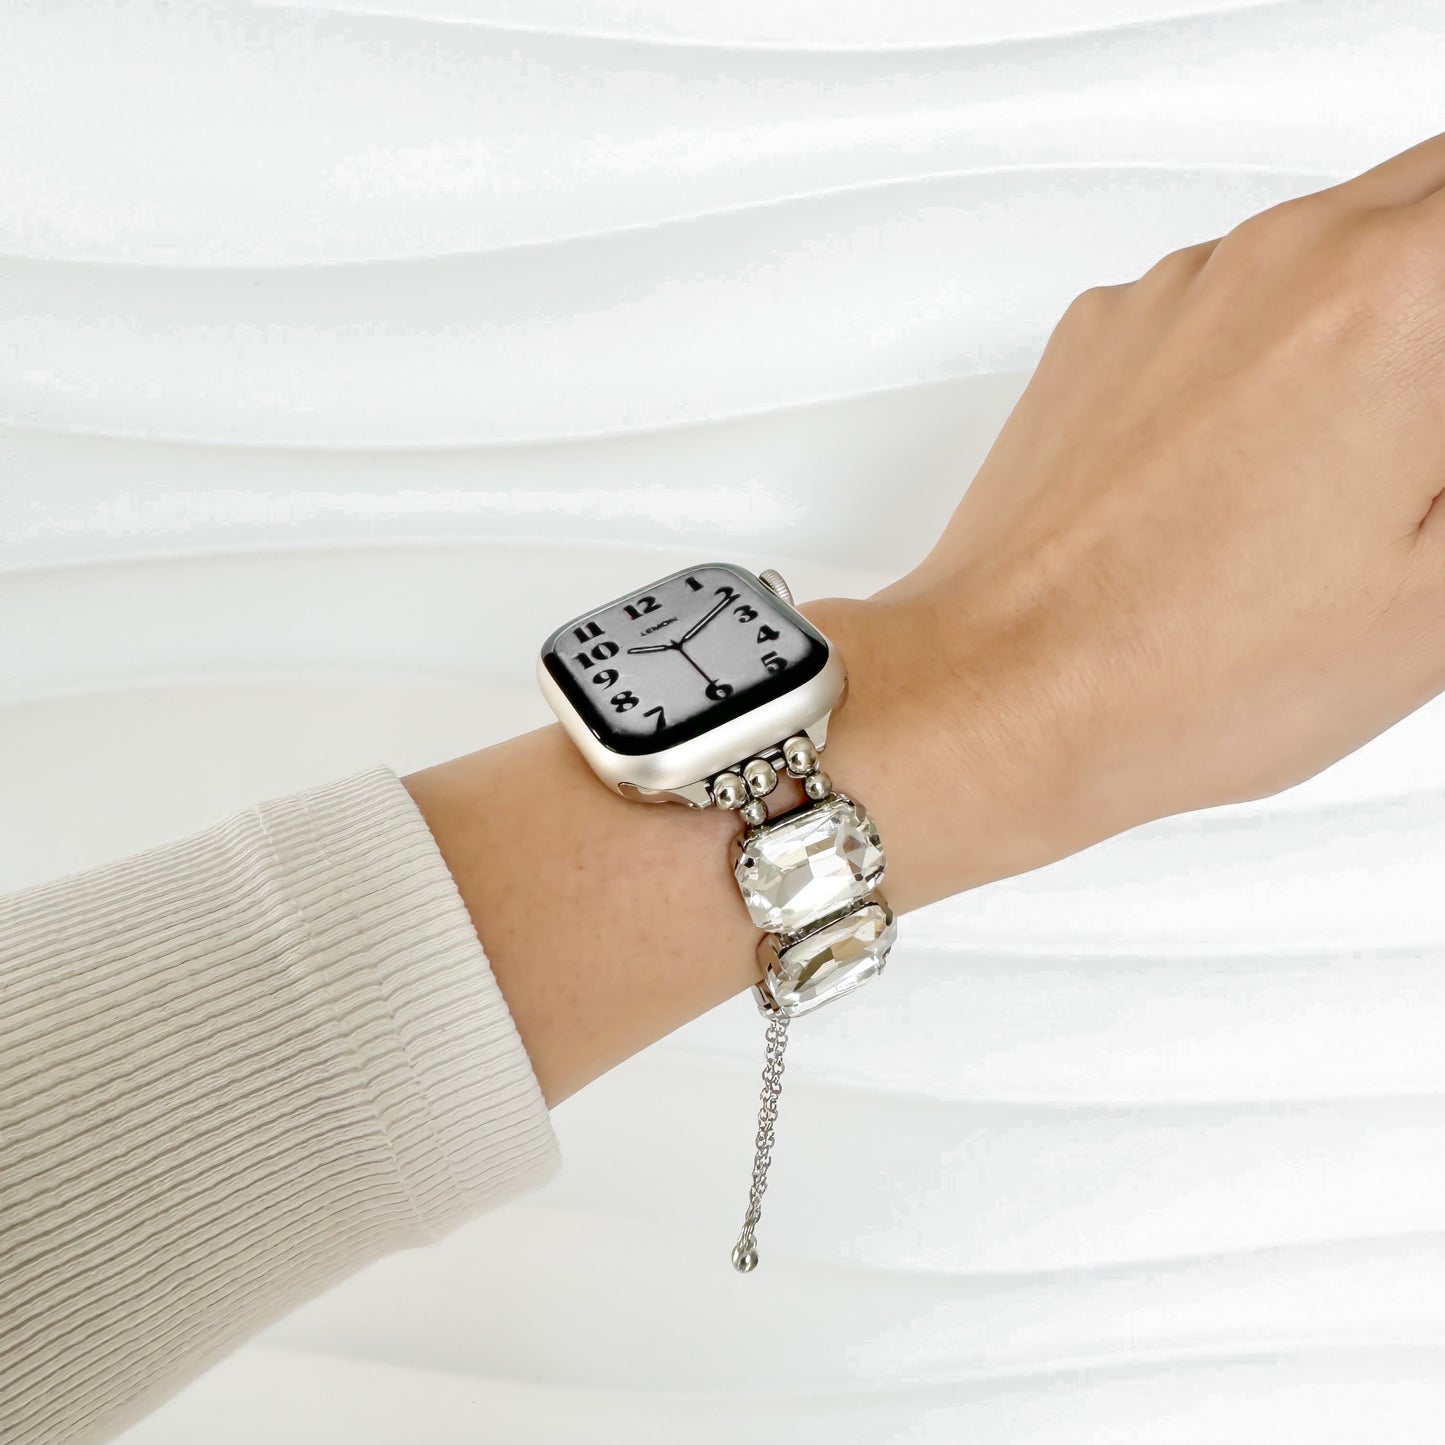 The Modern Apple Watch Bracelet - Silver